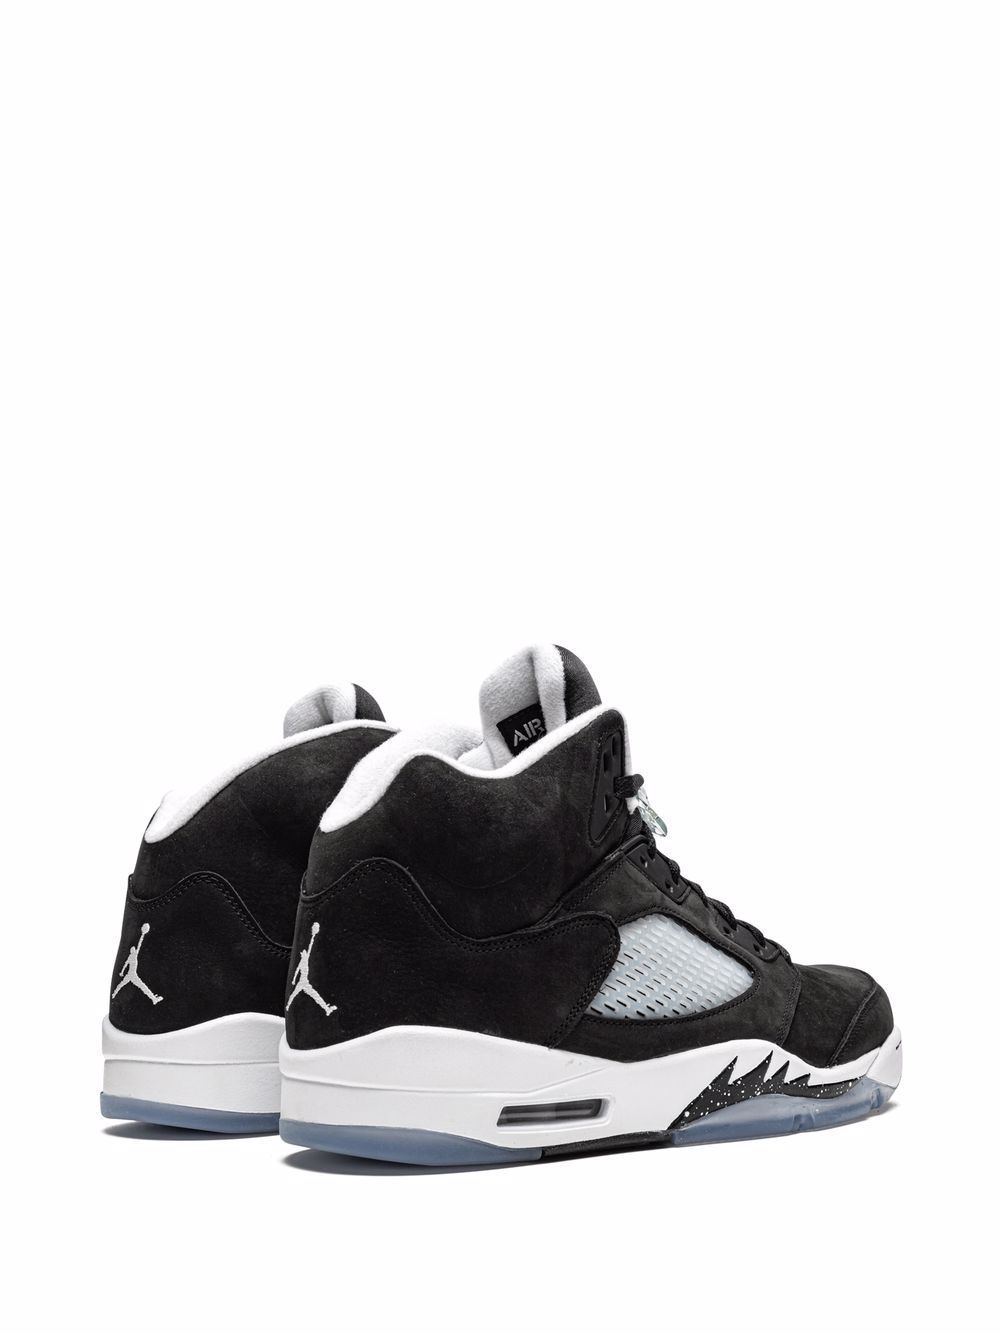 Jordan x Supreme Air Jordan 5 Retro Sneakers - Farfetch